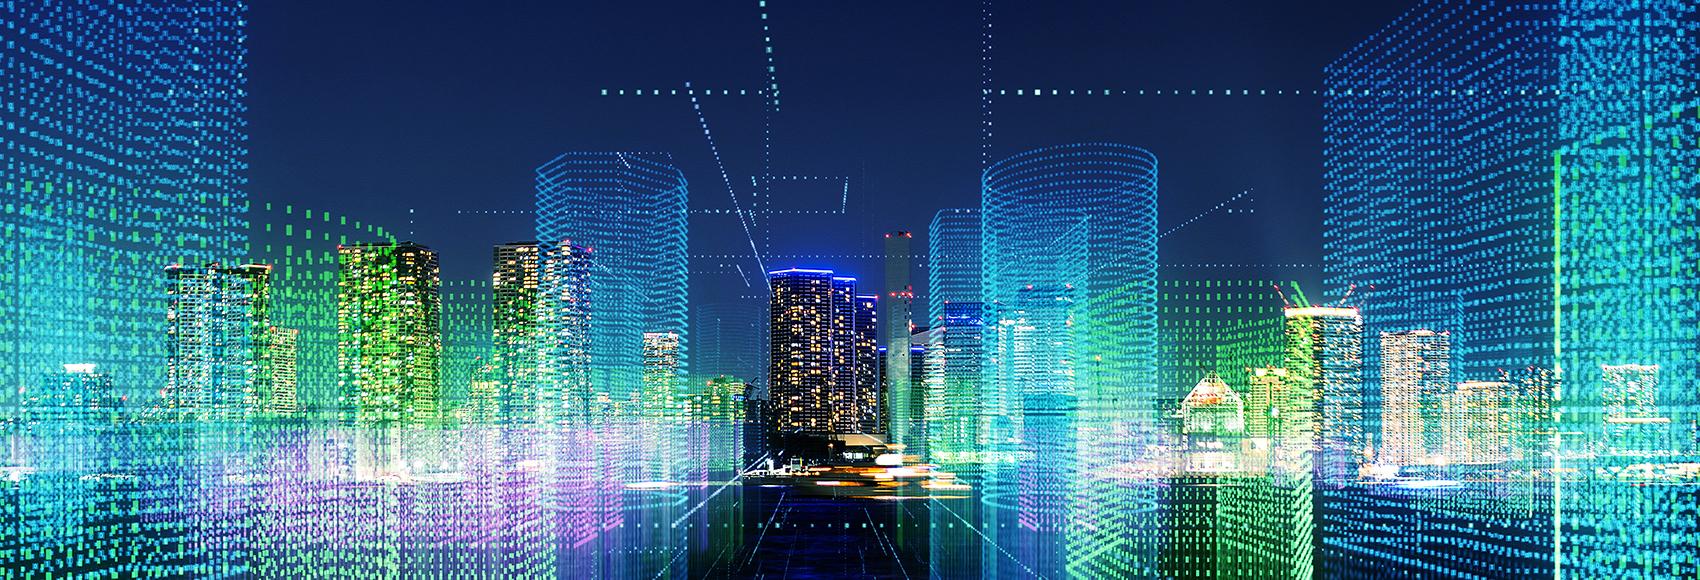 Croquis de concept de ville numérique futuriste